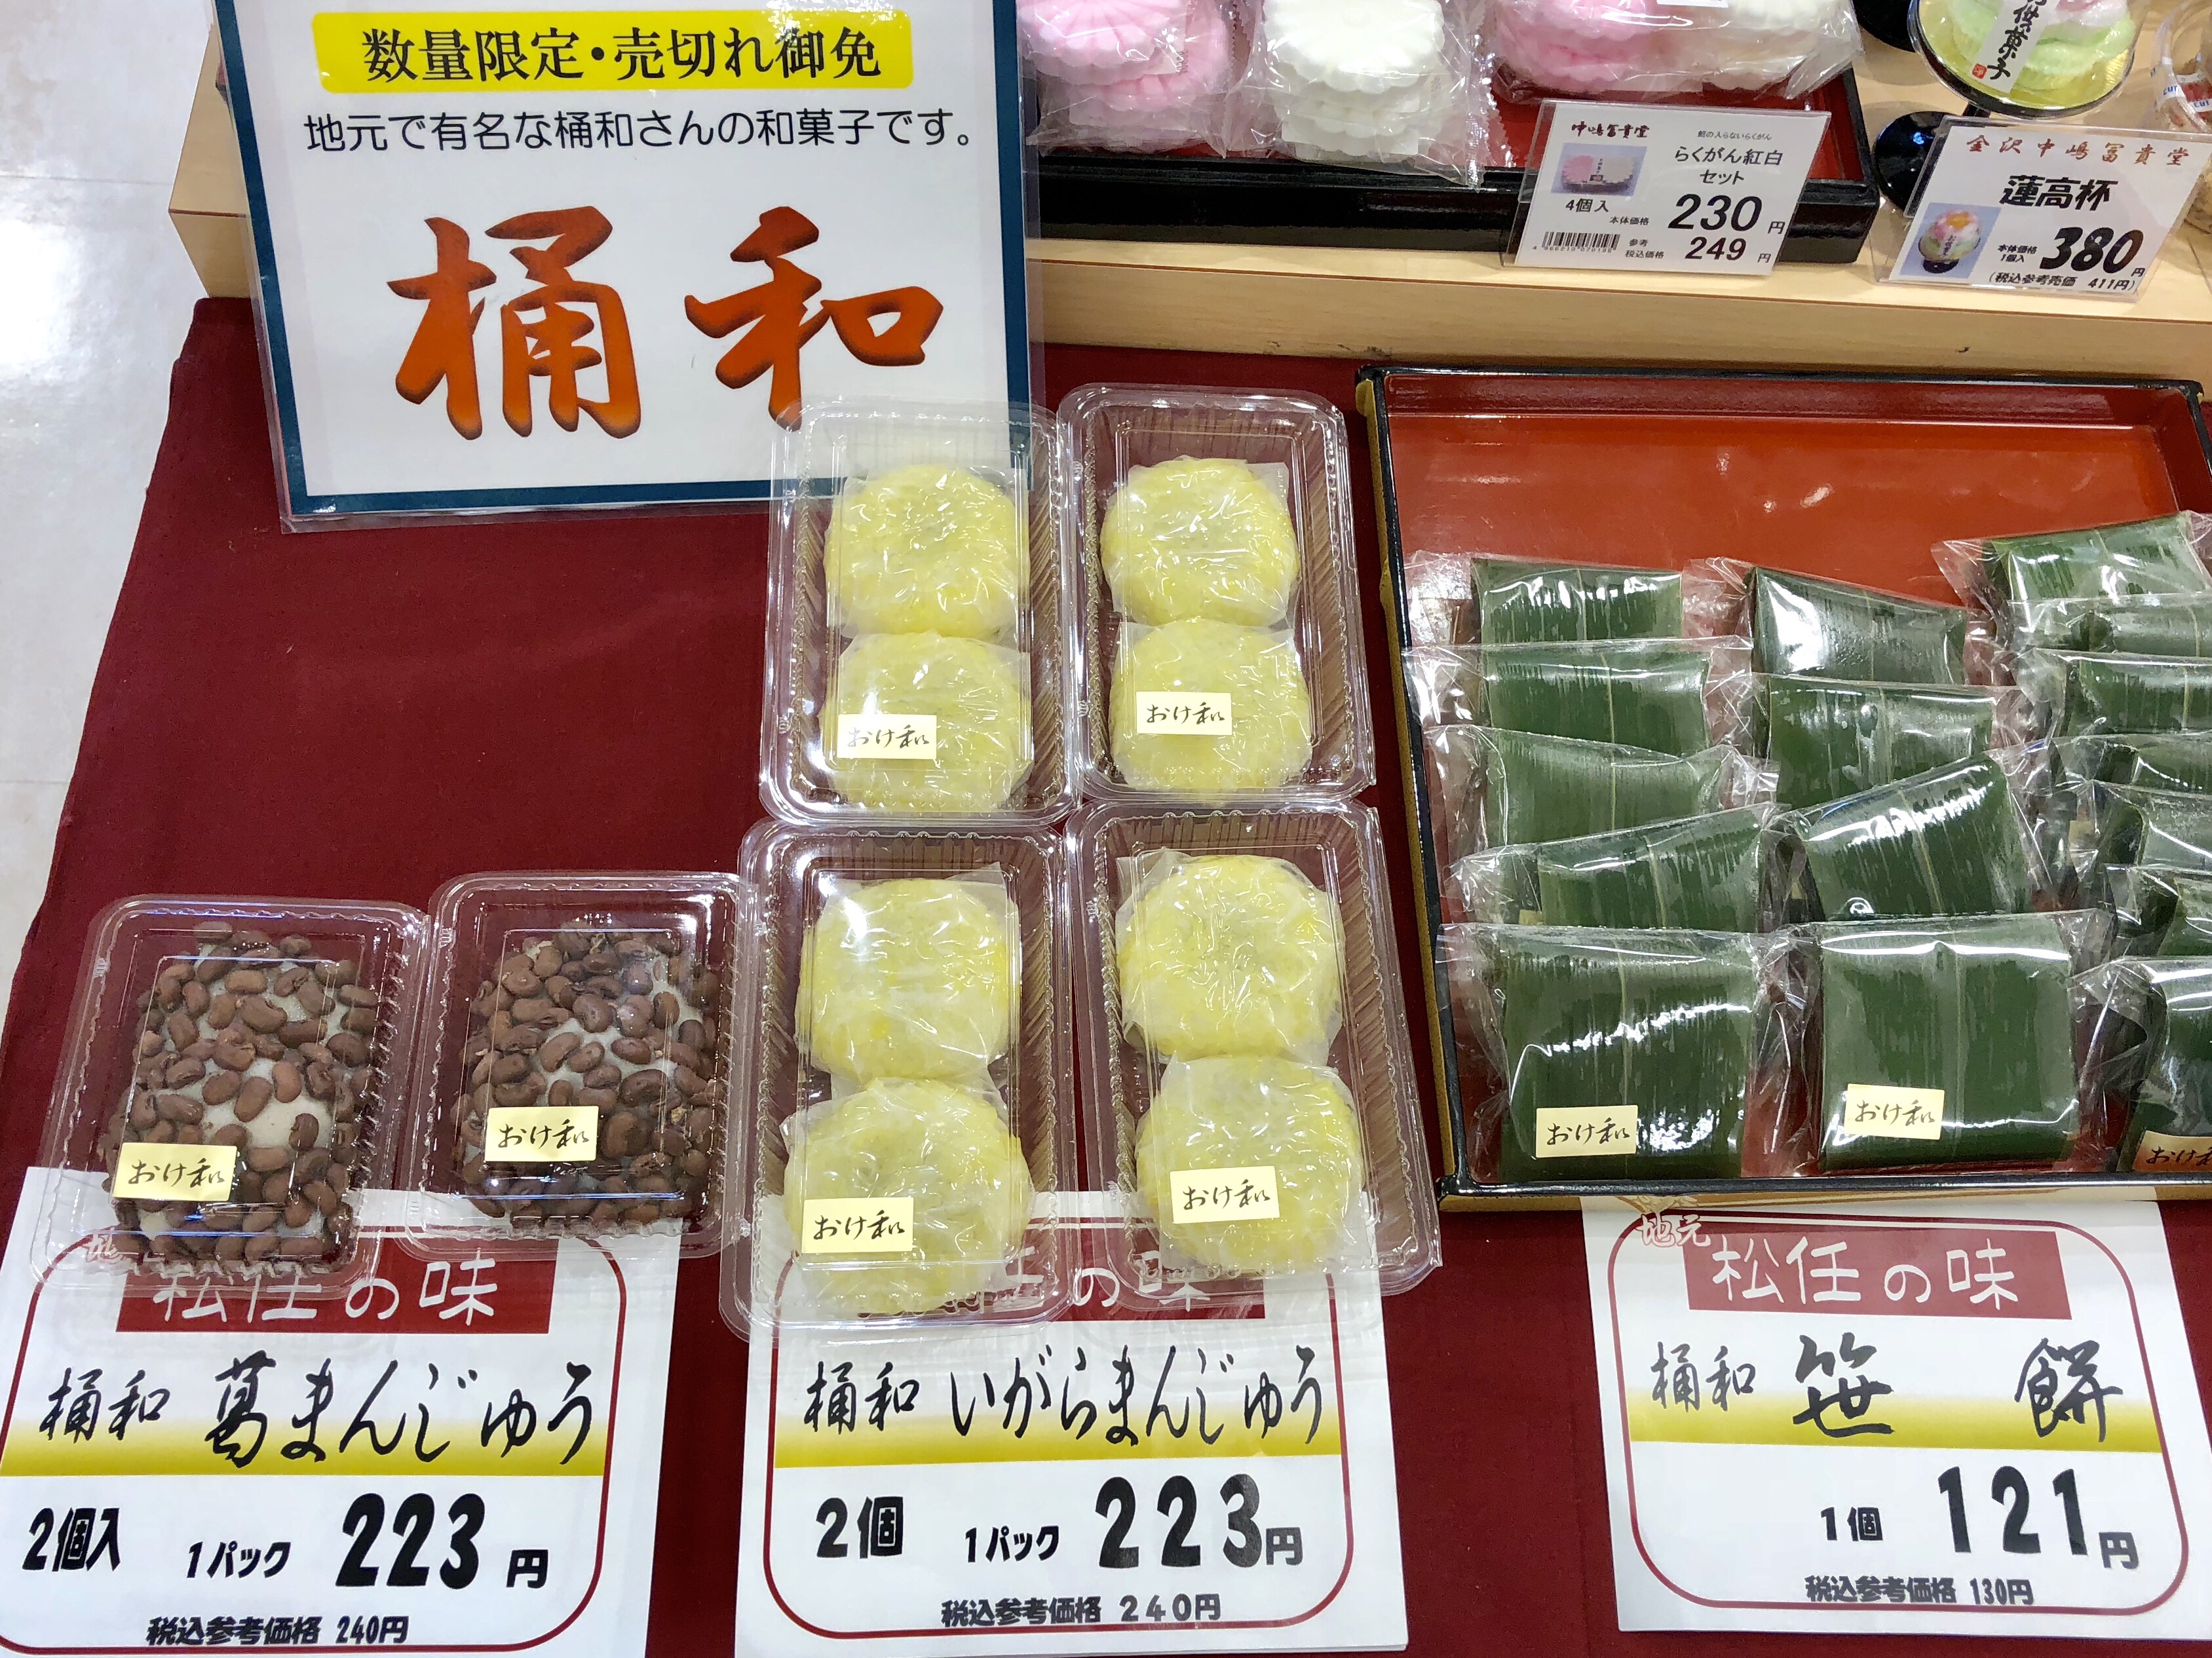 スーパーのマルエー松任店に売られていた白山市の松任の桶和の朝生菓子のささげ餅といがらまんじゅうと笹餅